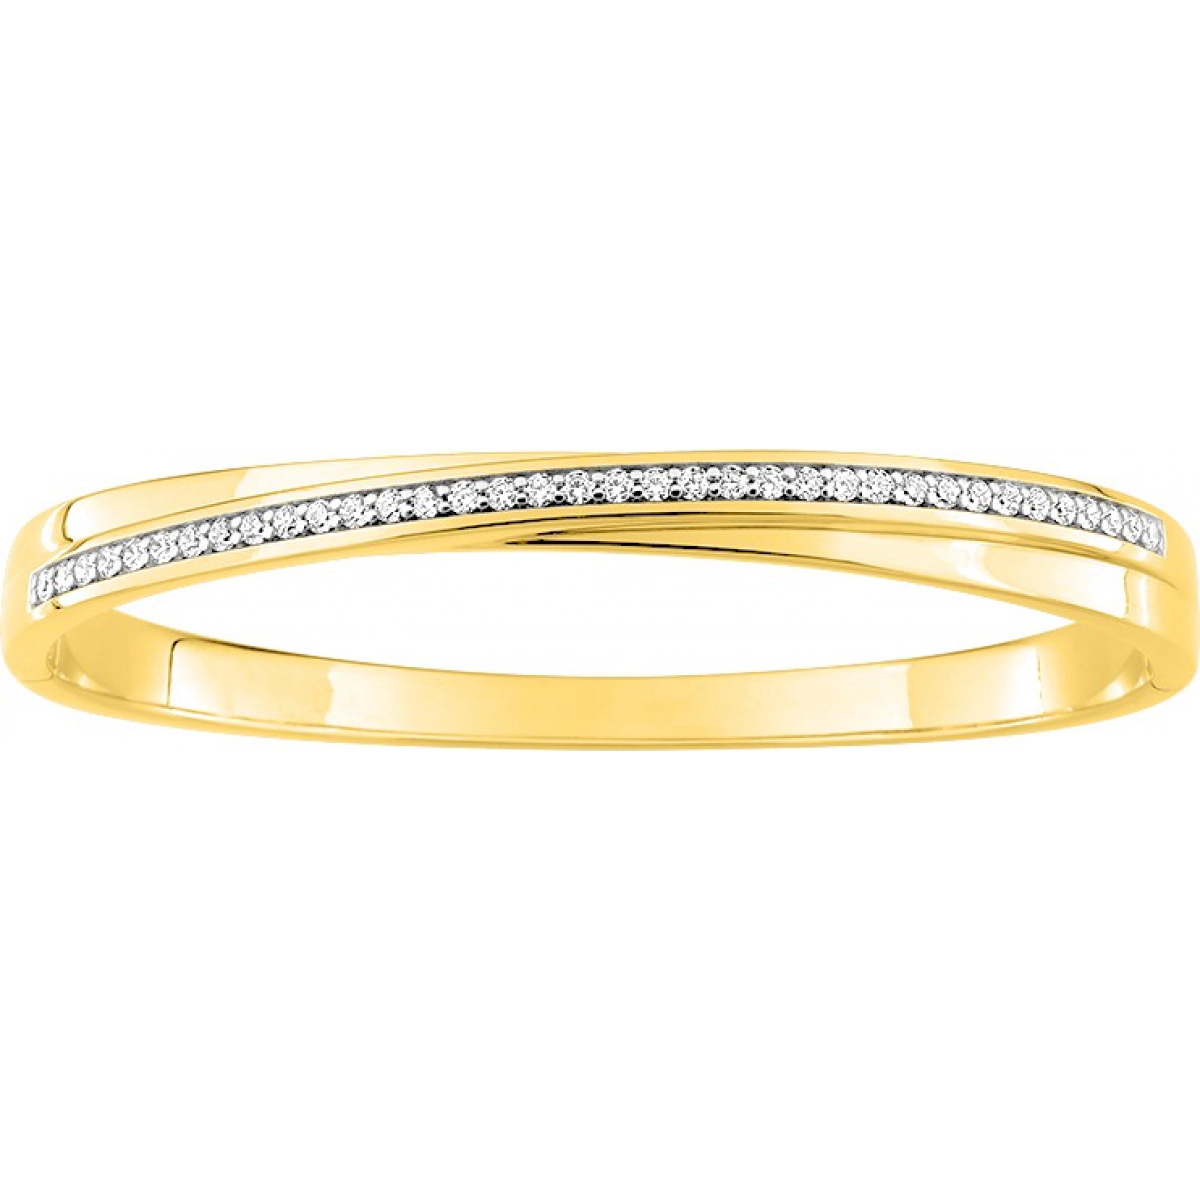 Bracelet w. cz gold plated Brass Lua Blanca  256977.9 